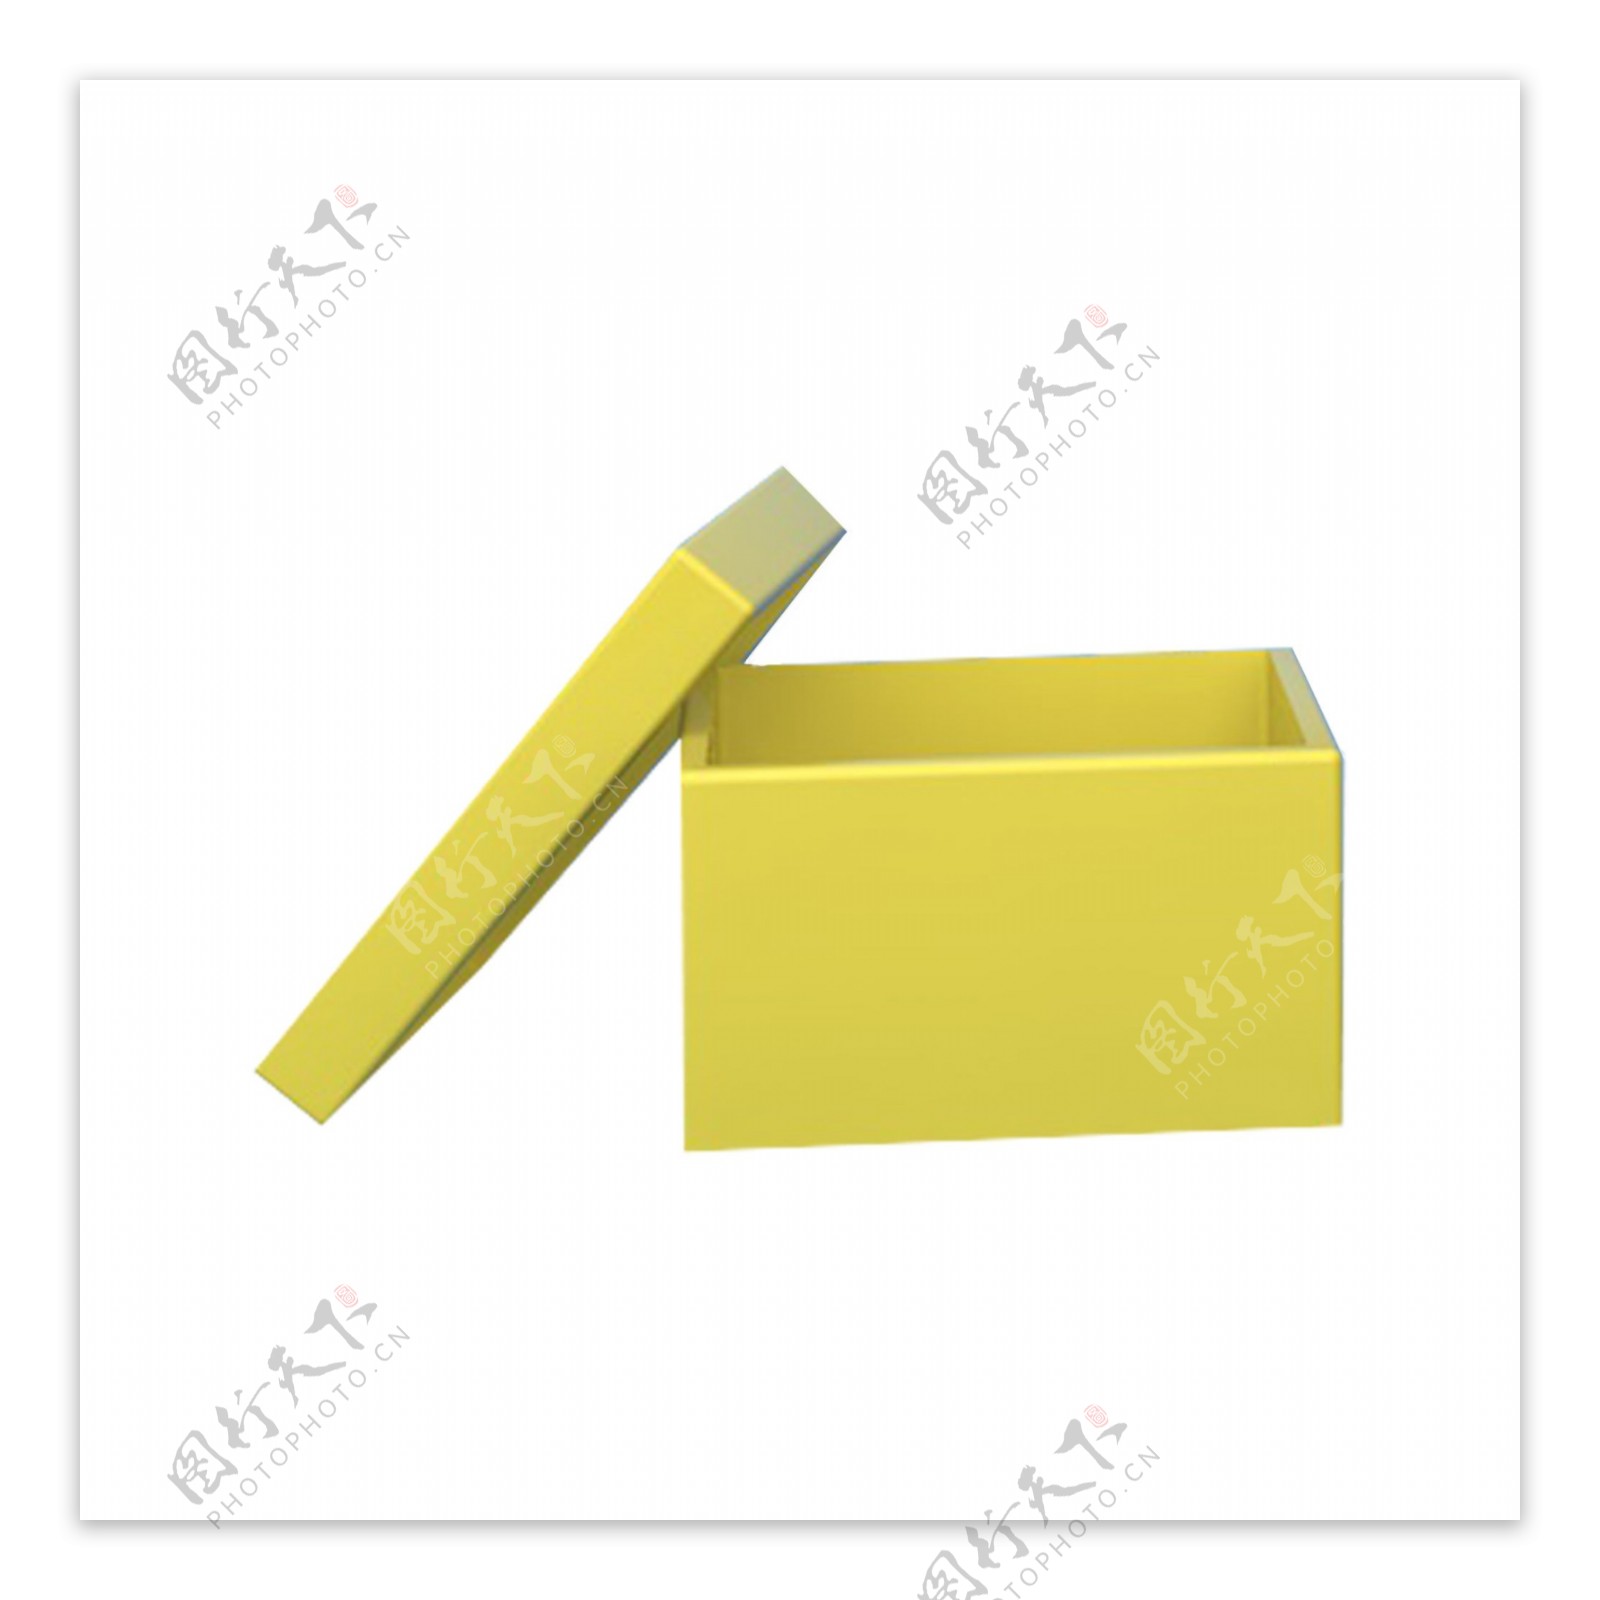 一个黄色三维收纳盒子